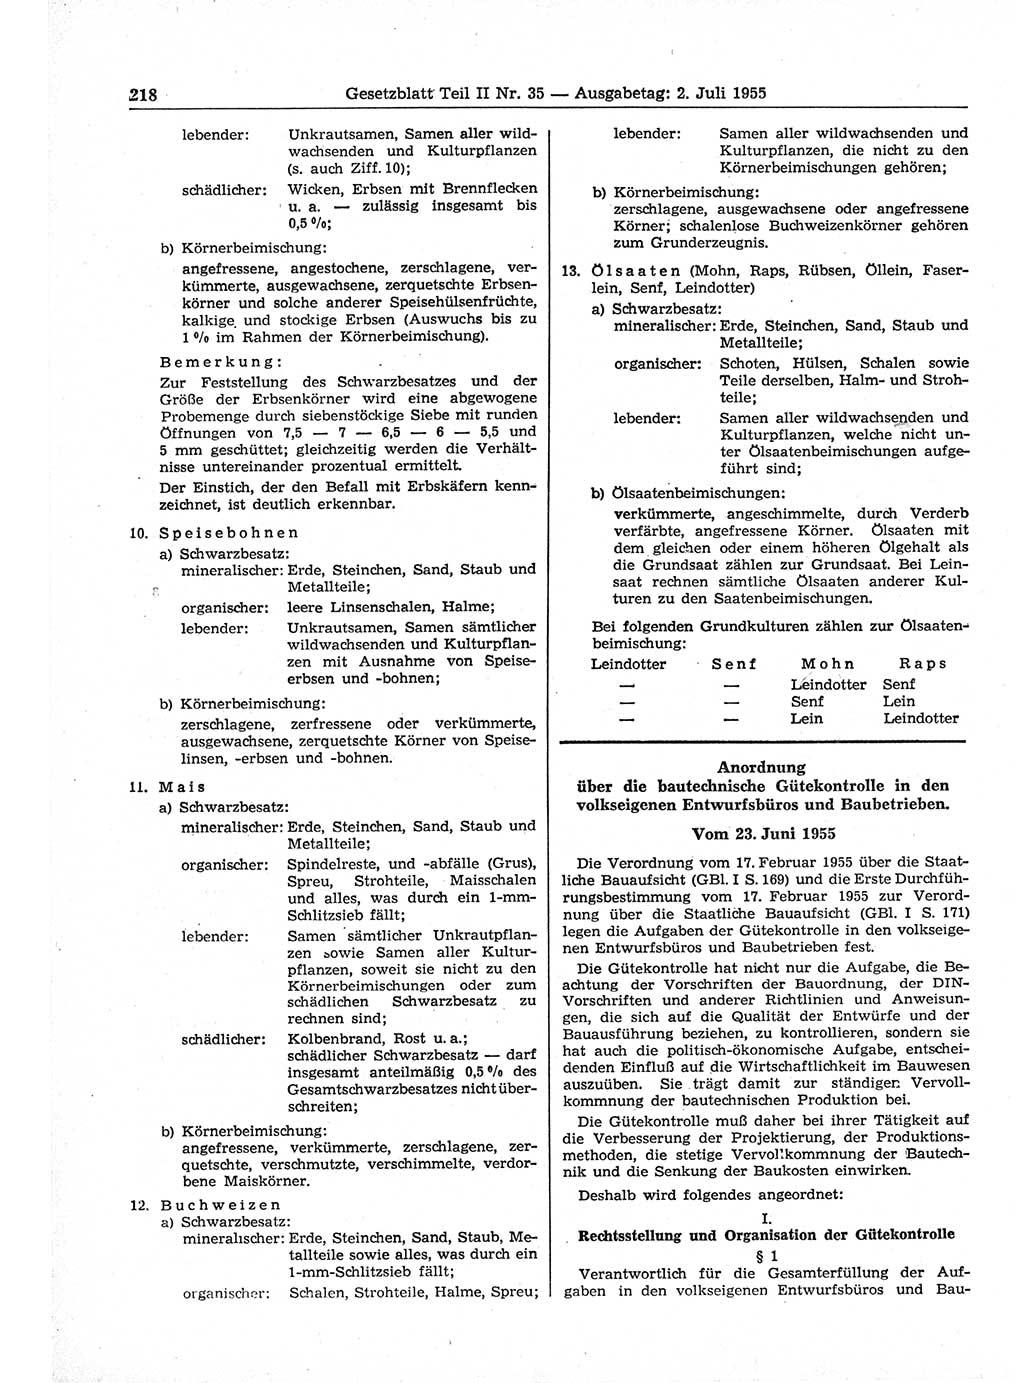 Gesetzblatt (GBl.) der Deutschen Demokratischen Republik (DDR) Teil ⅠⅠ 1955, Seite 218 (GBl. DDR ⅠⅠ 1955, S. 218)